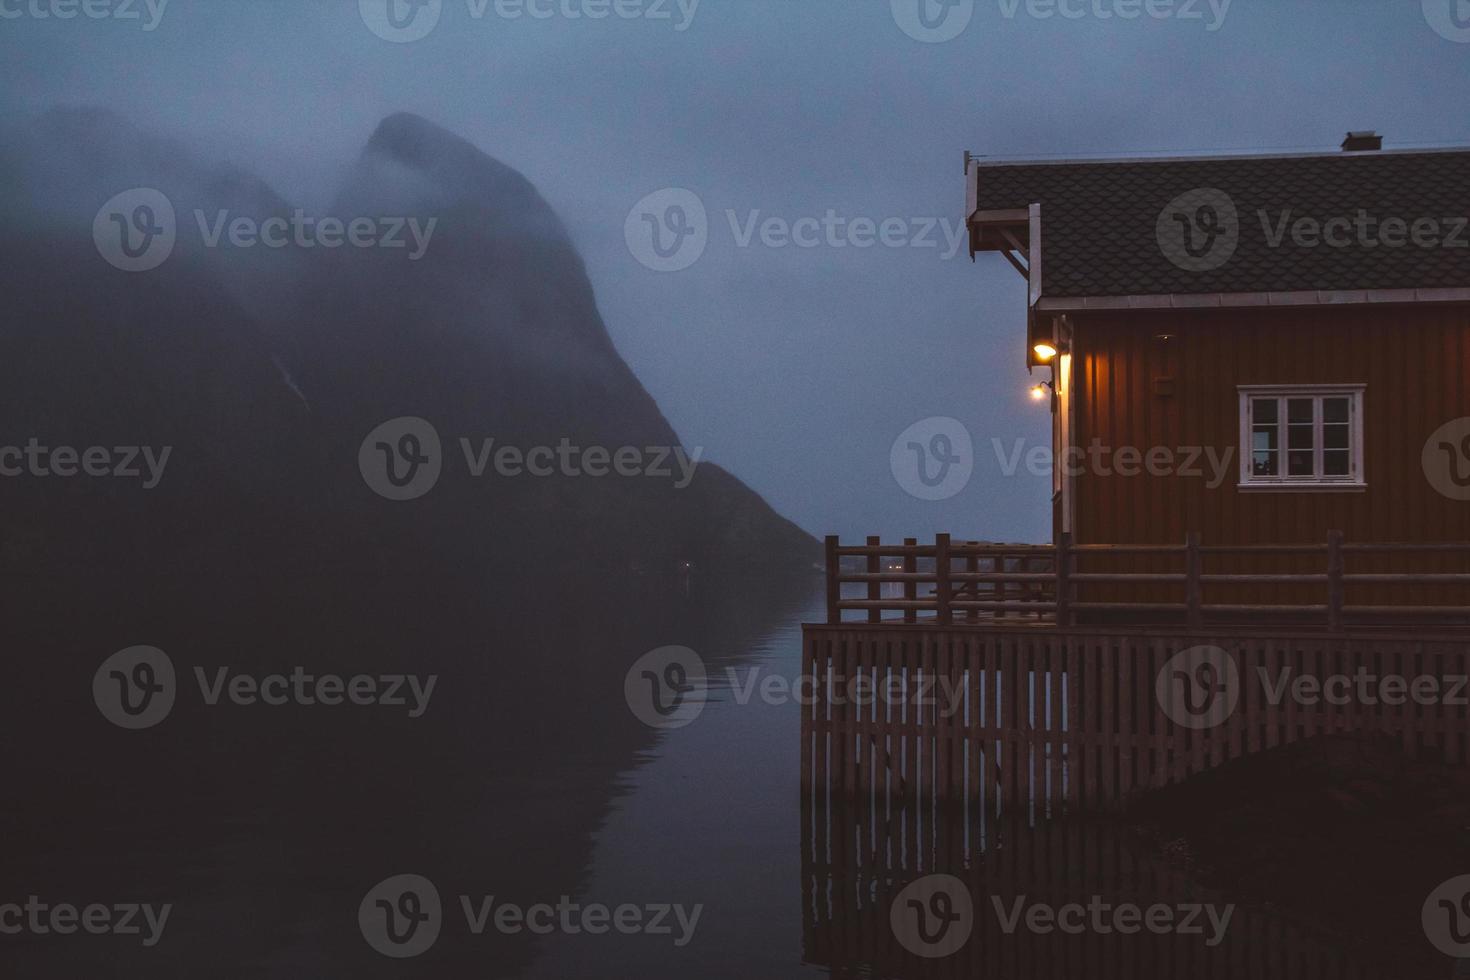 noorwegen rorbu huizen en bergen rotsen over fjord landschap scandinavische reizen bekijken lofoten eilanden. nacht landschap. foto